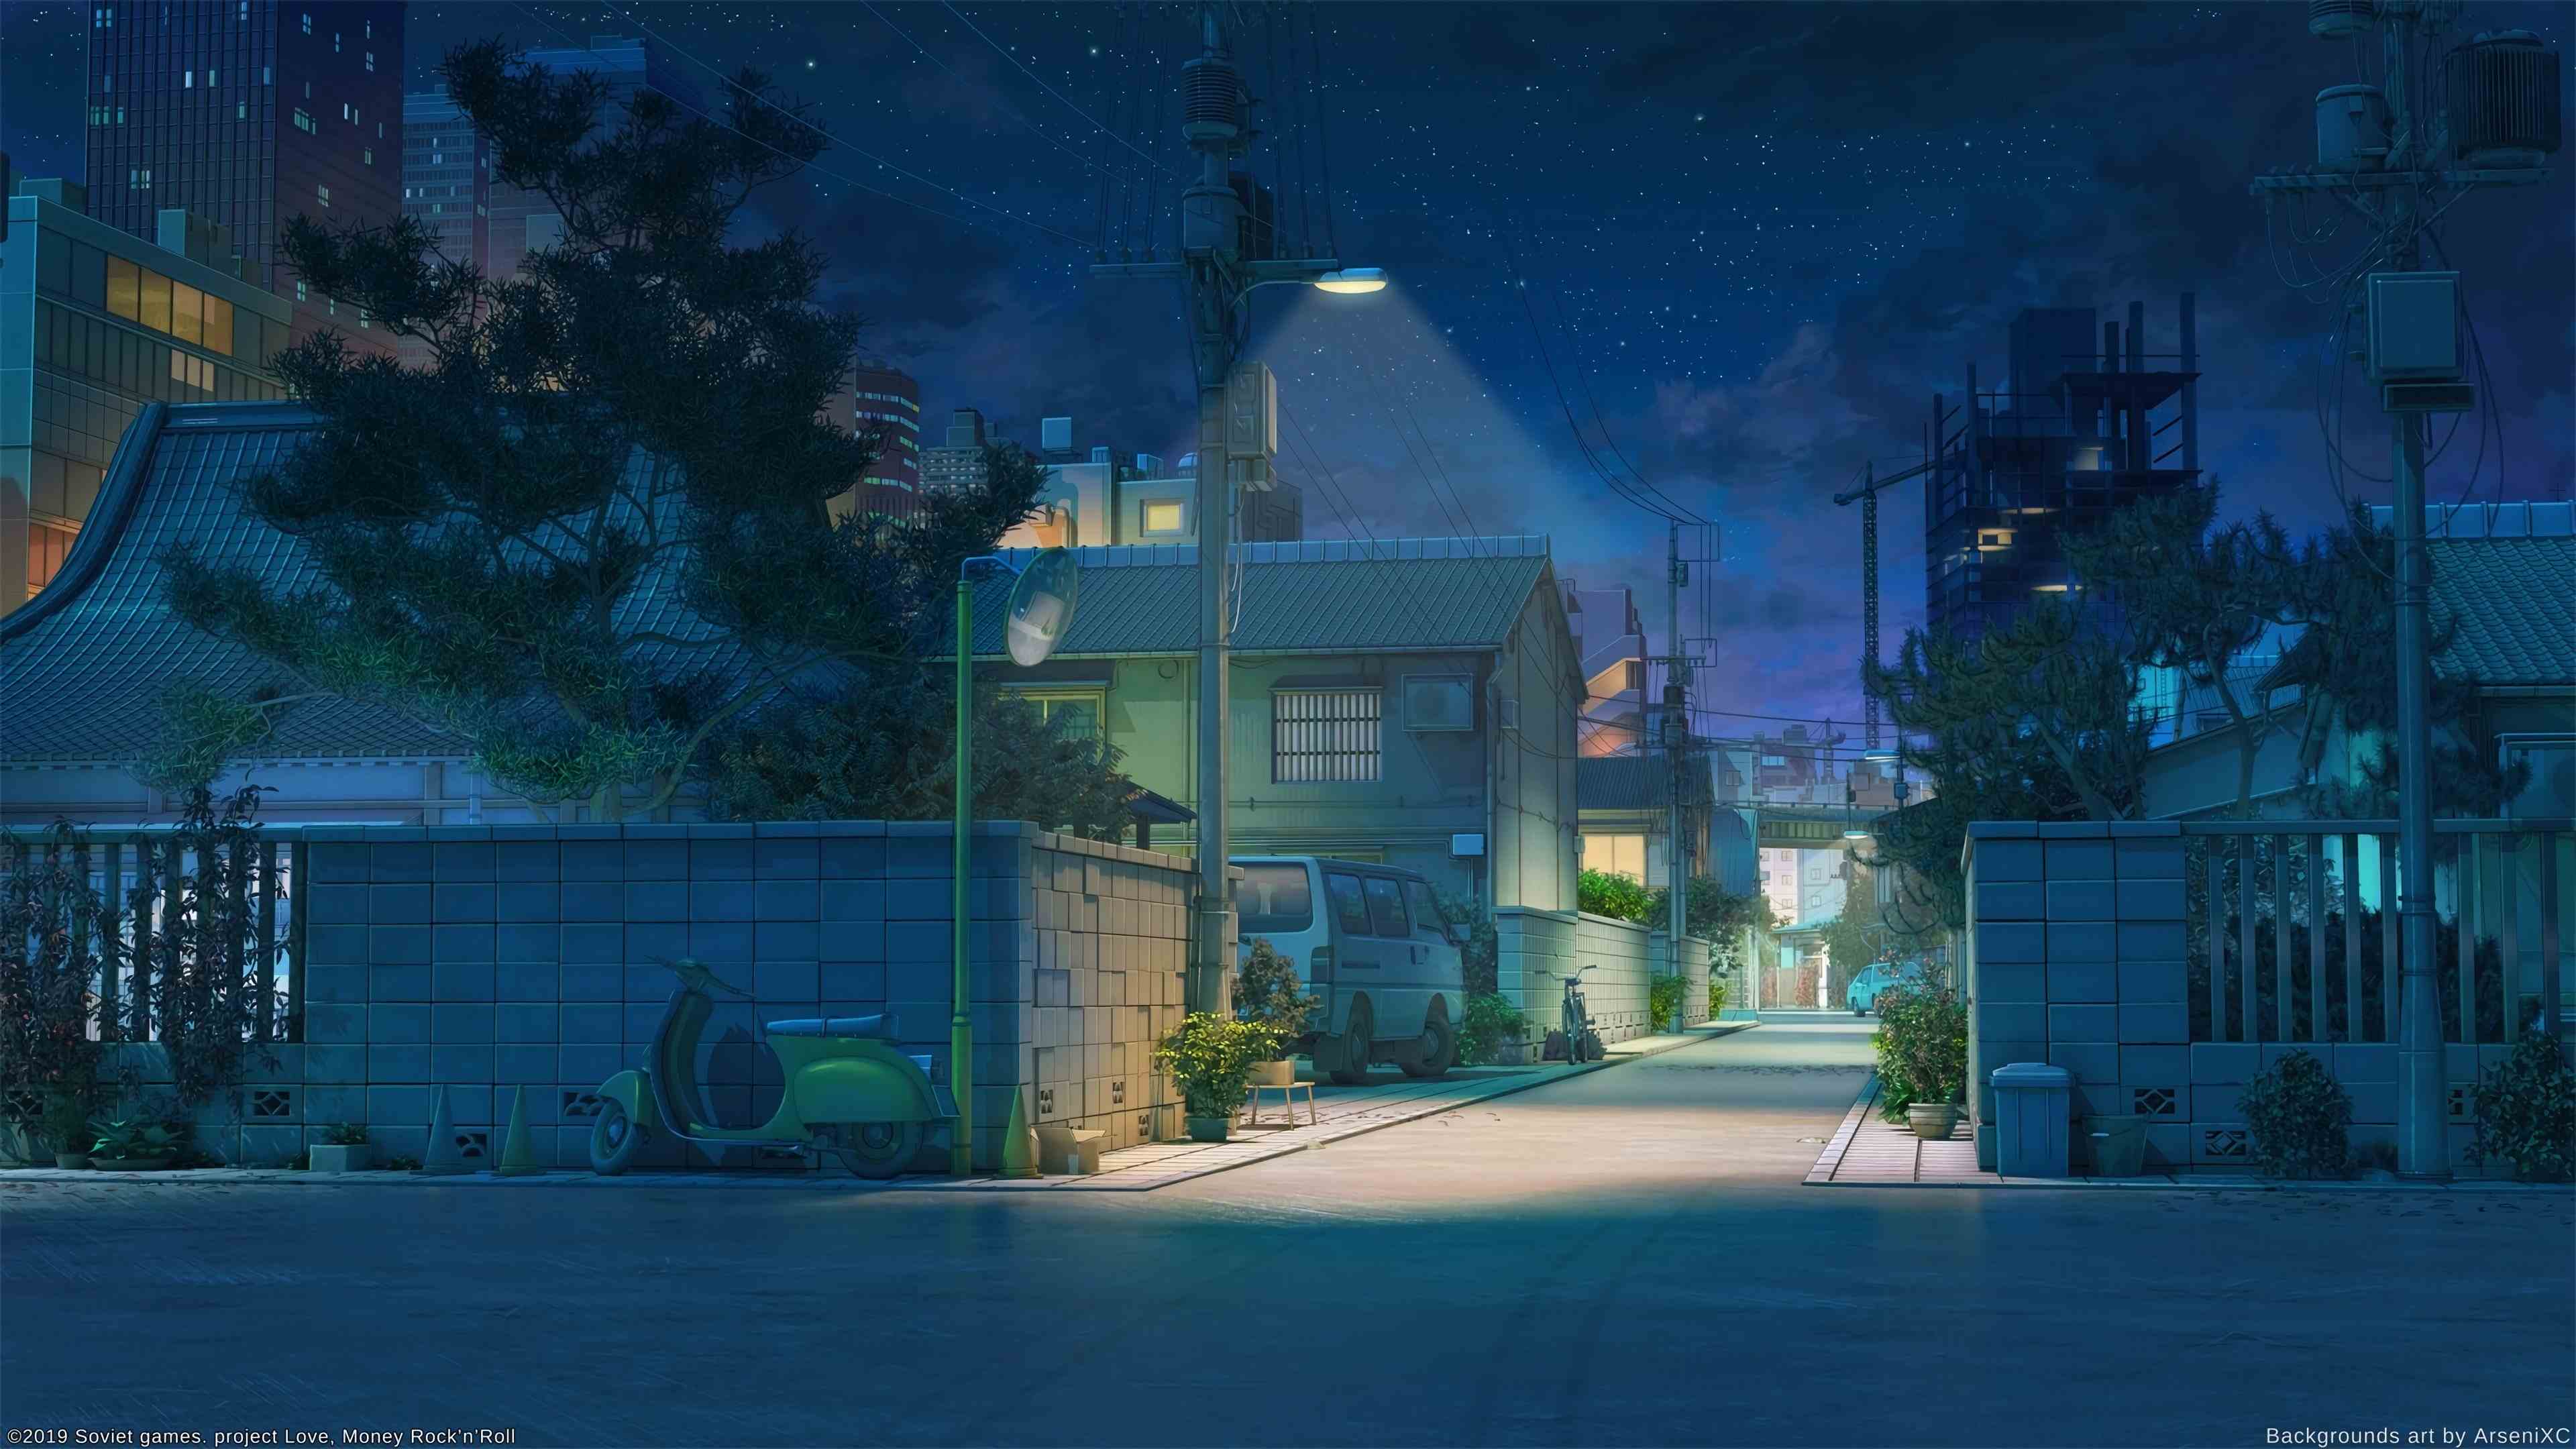 anime wallpaper telefon,himmel,blau,haus,die architektur,nacht